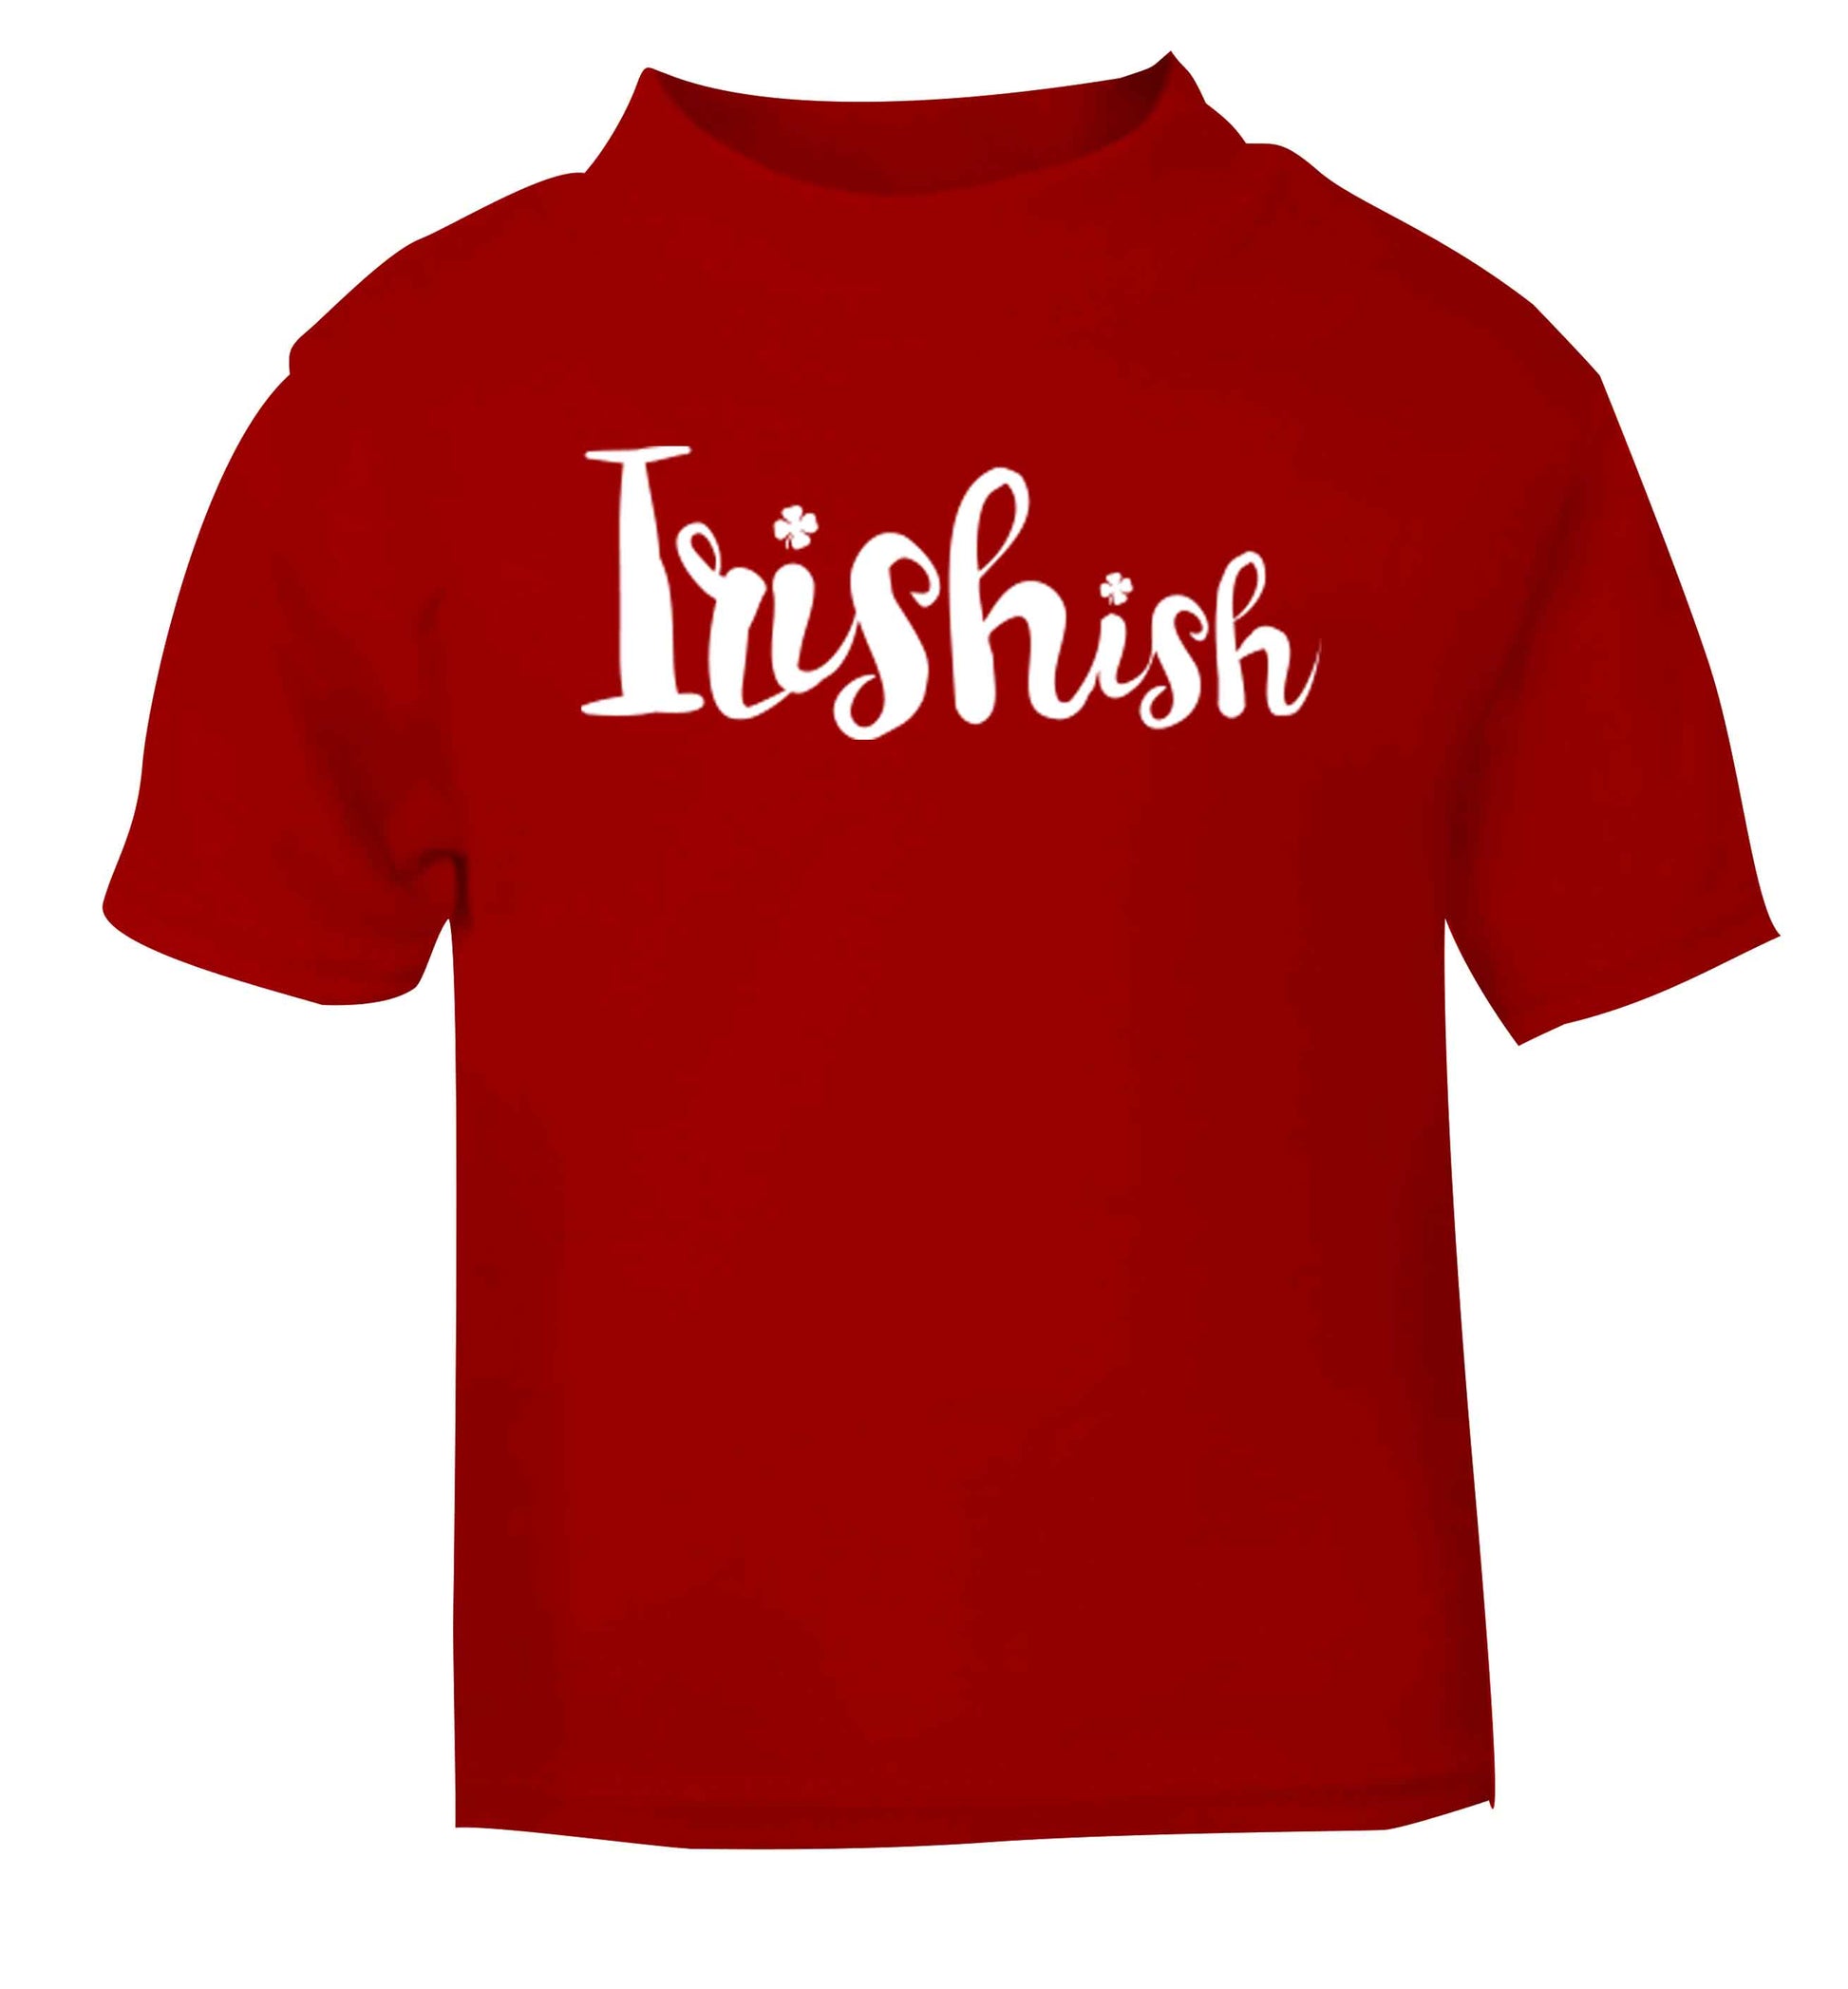 Irishish red baby toddler Tshirt 2 Years